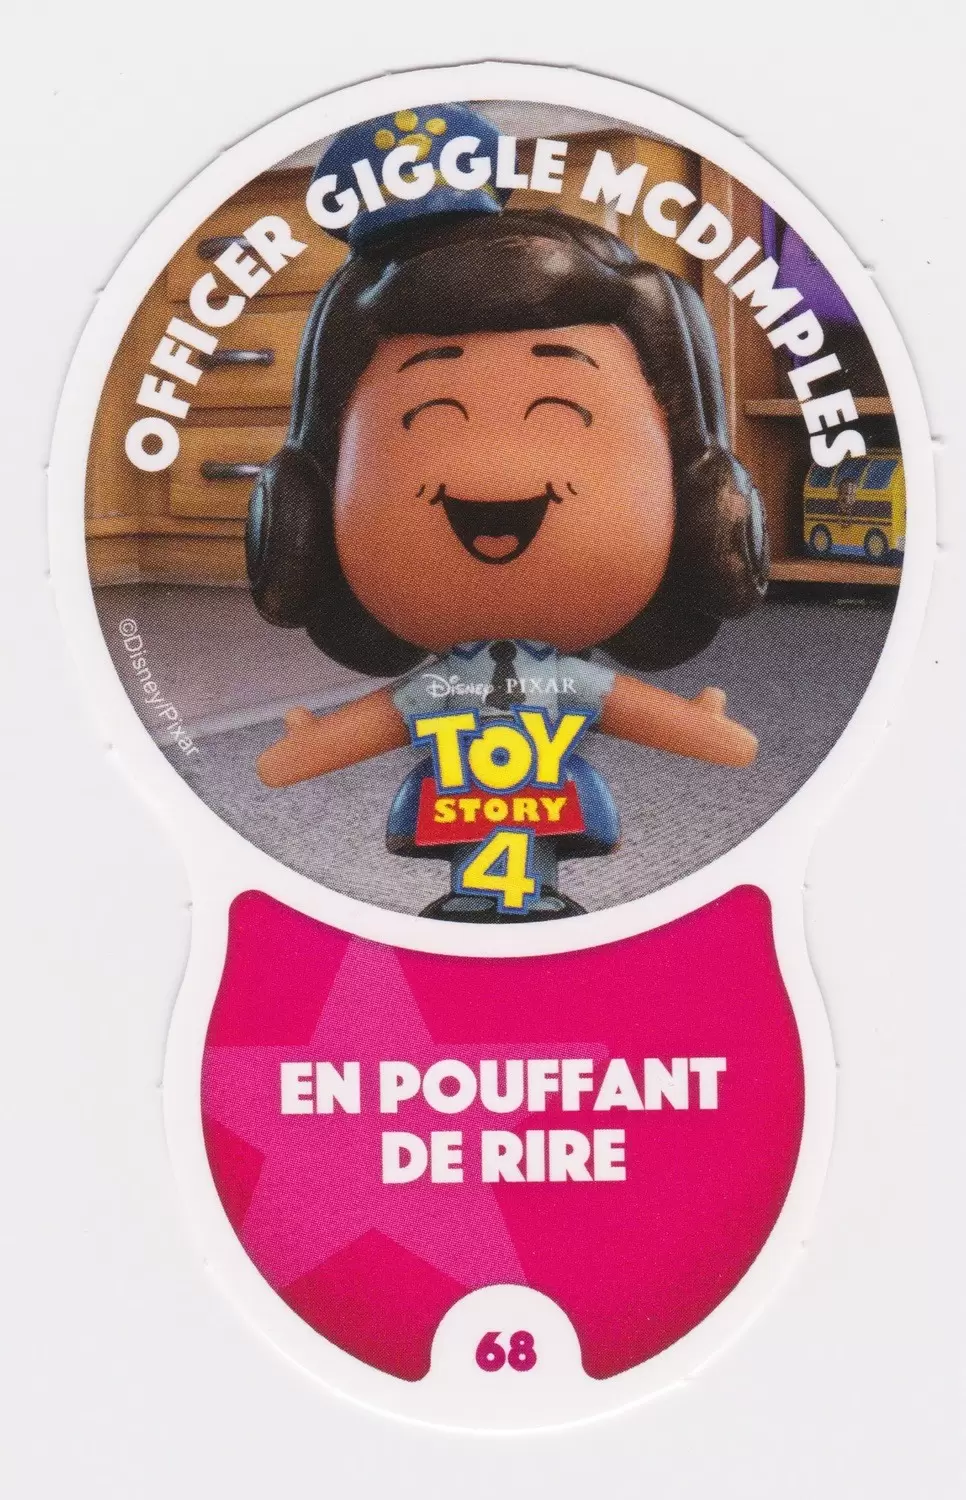 Cartes Auchan : Les Défis (Disney) - OFFICIER    GIGGLE   MCDIMPLES